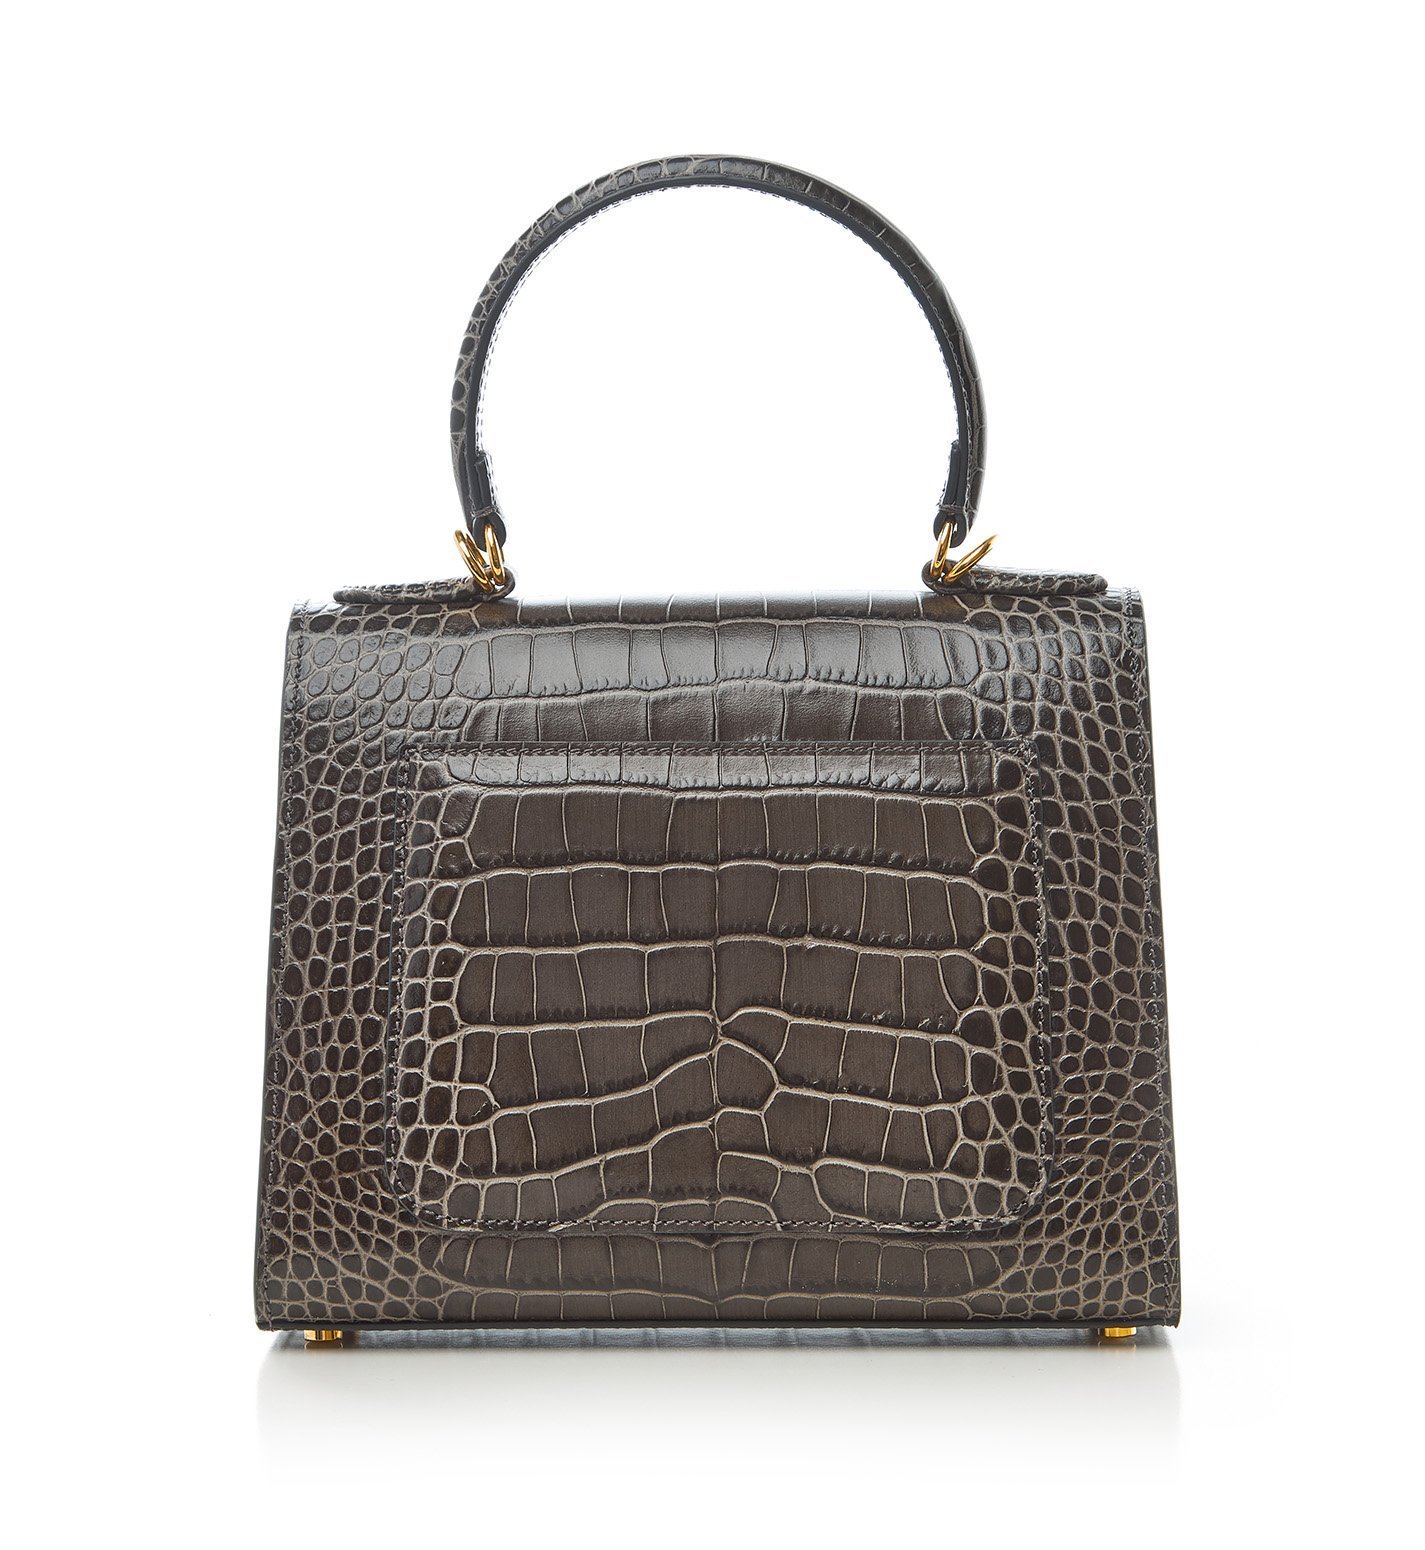 Grey crocodile embossed leather bag - Slaylebrity